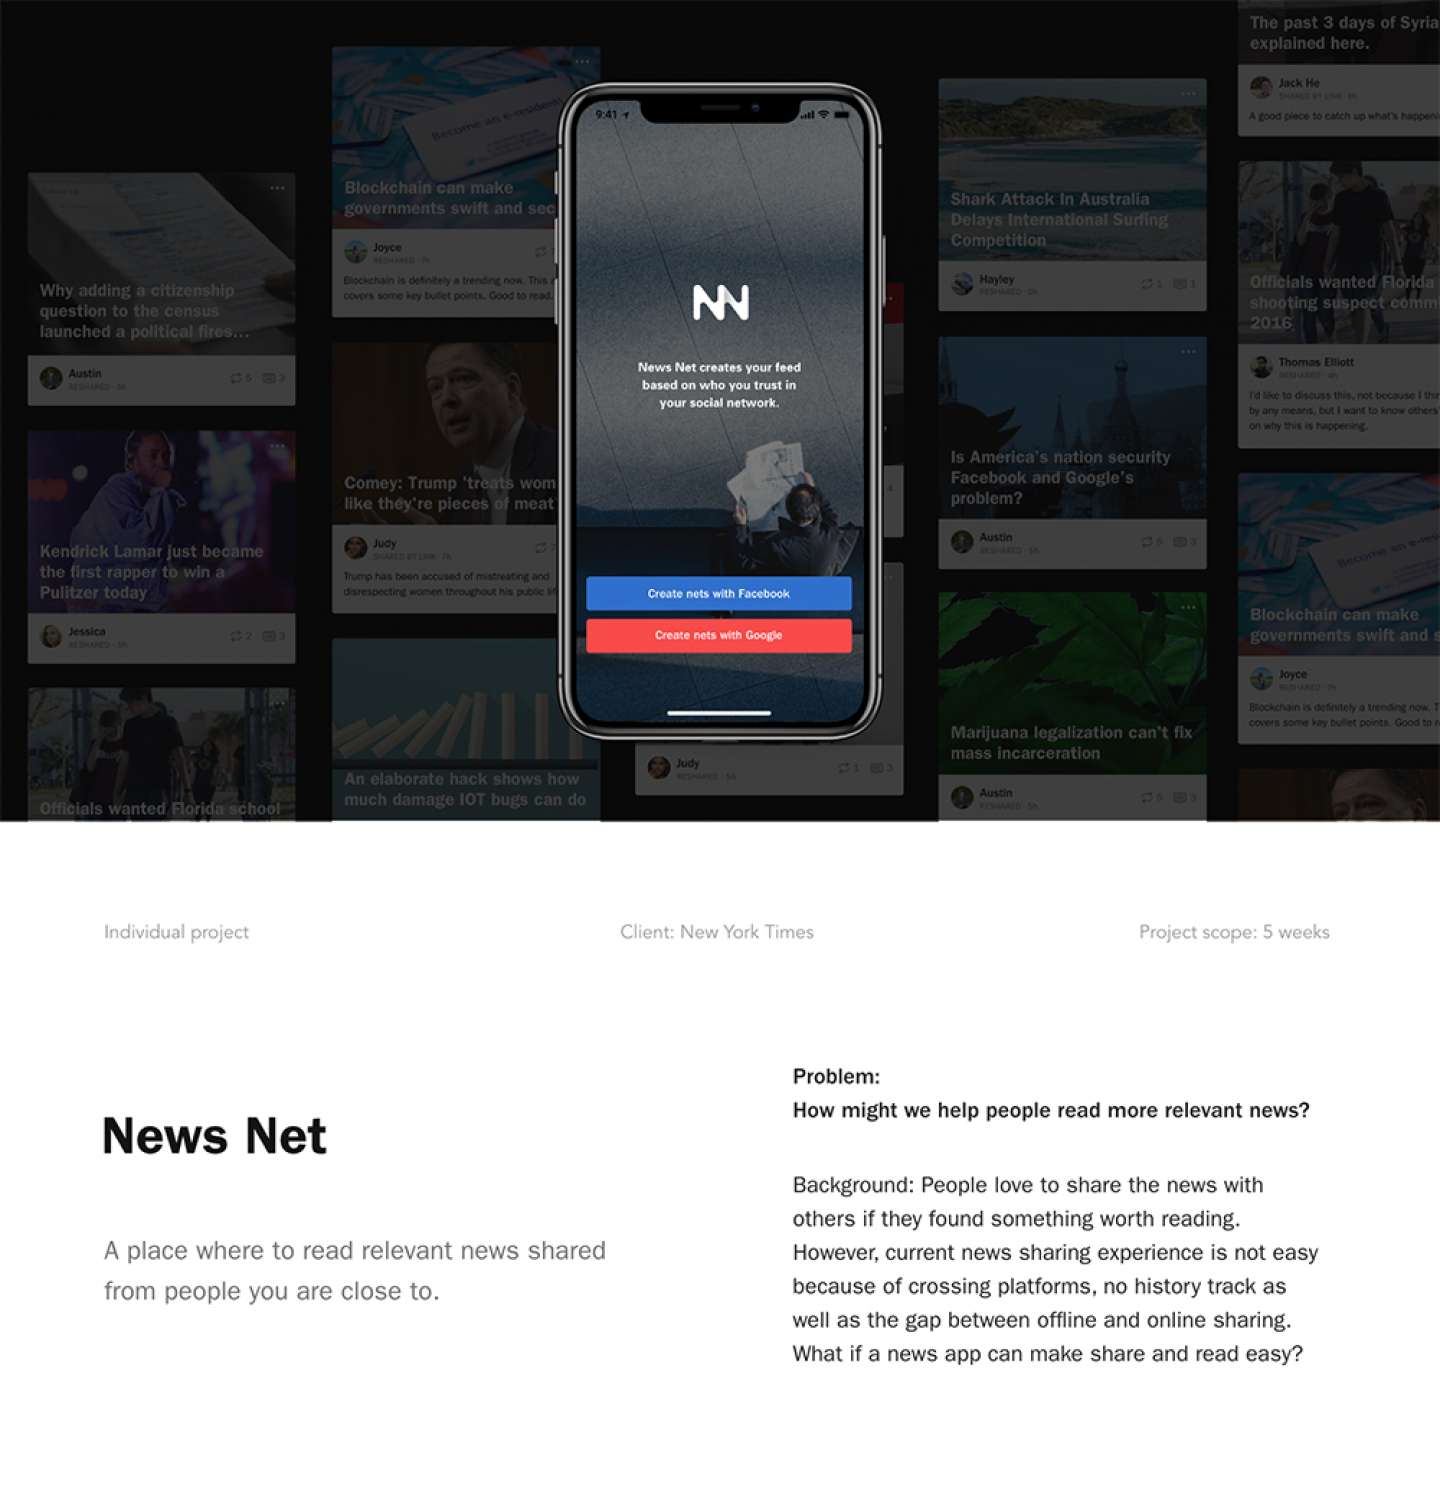          News Net 